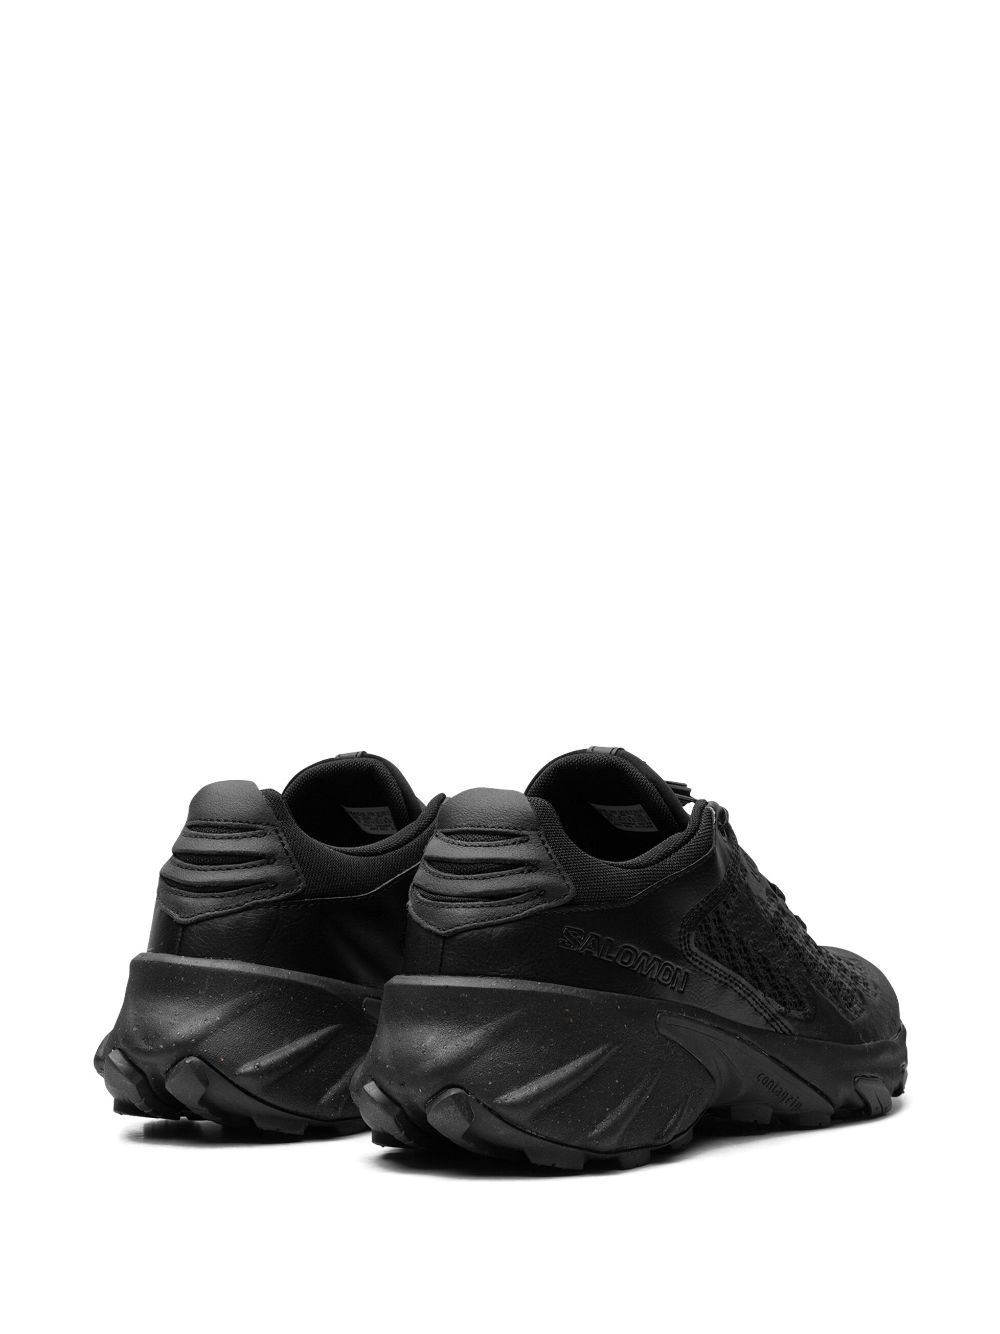 Speedverse PRG "Black" sneakers - 3